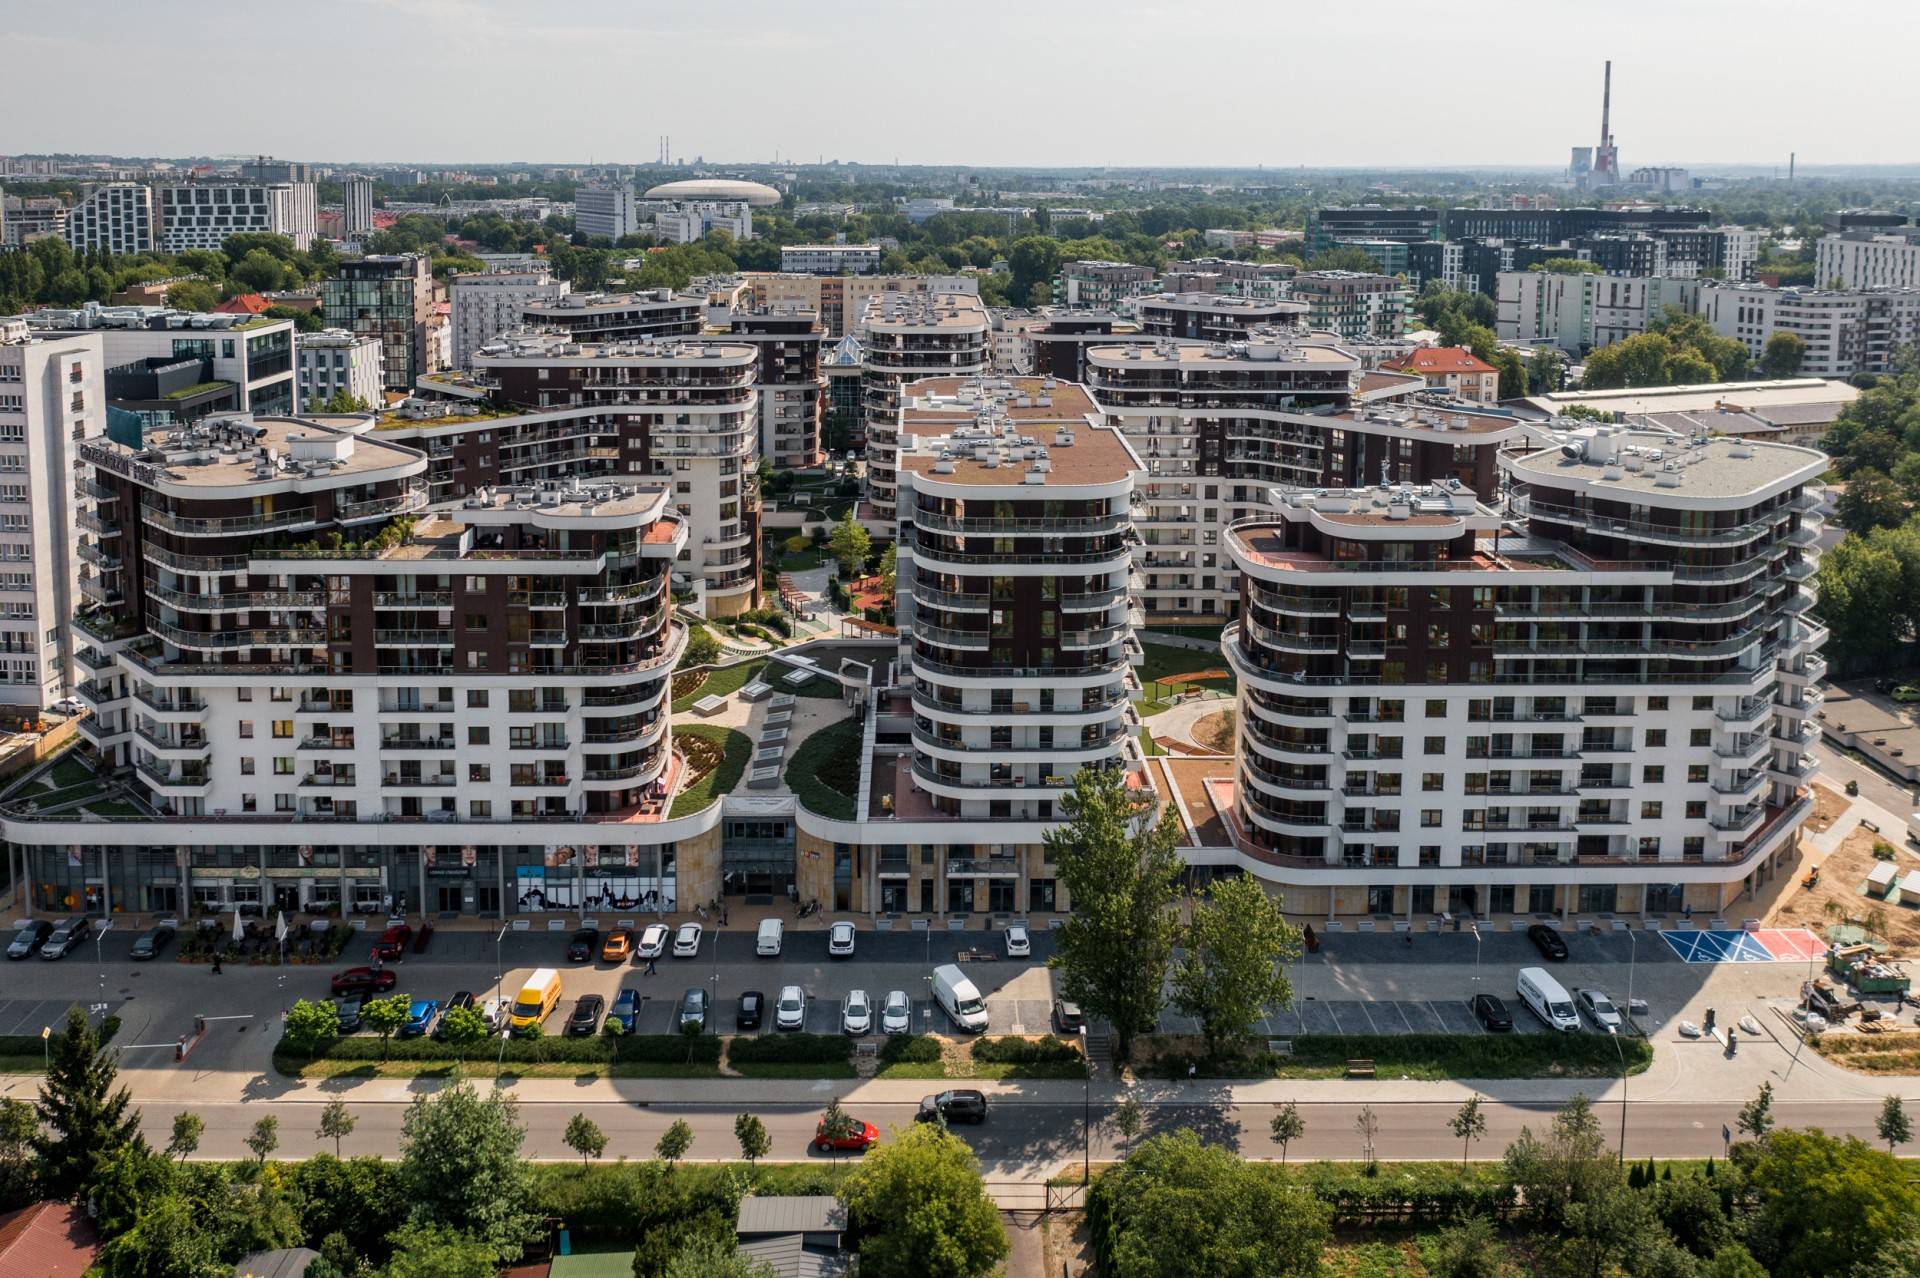 Olbrzymi wzrost cen najmu mieszkań w Krakowie. Eksperci nie mają dobrych wieści